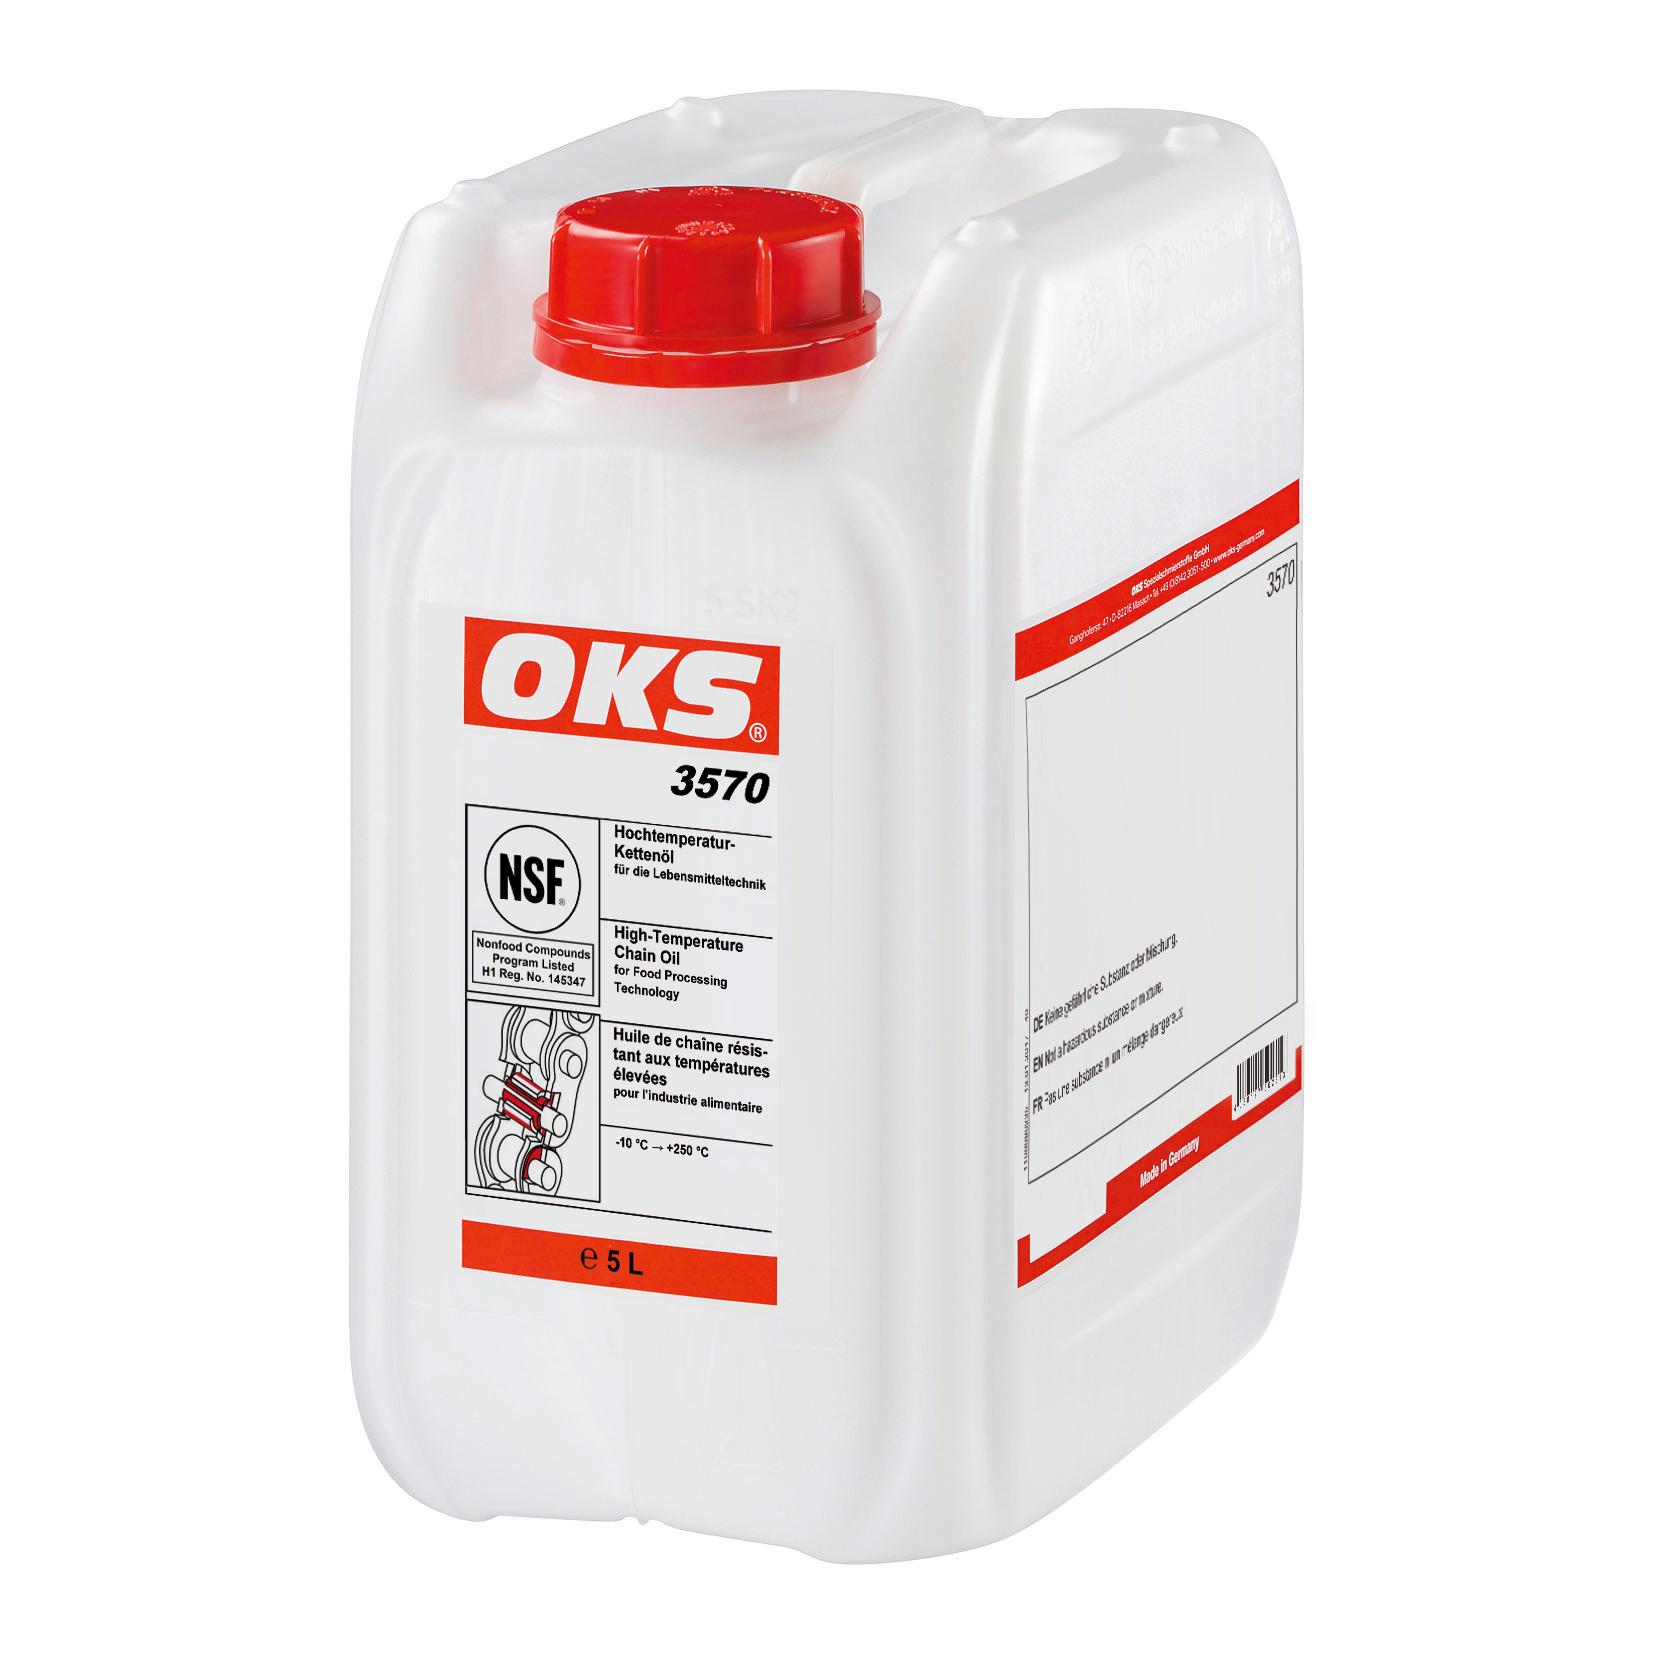 OKS3570-5 OKS 3570 is een NSF H1 is een synthetische, niet vervuilende olie geschikt voor het smeren van kettingen, geleidingen, span- en droogramen of glijvlakken bij temperaturen van -10 °C tot + 250 °C.